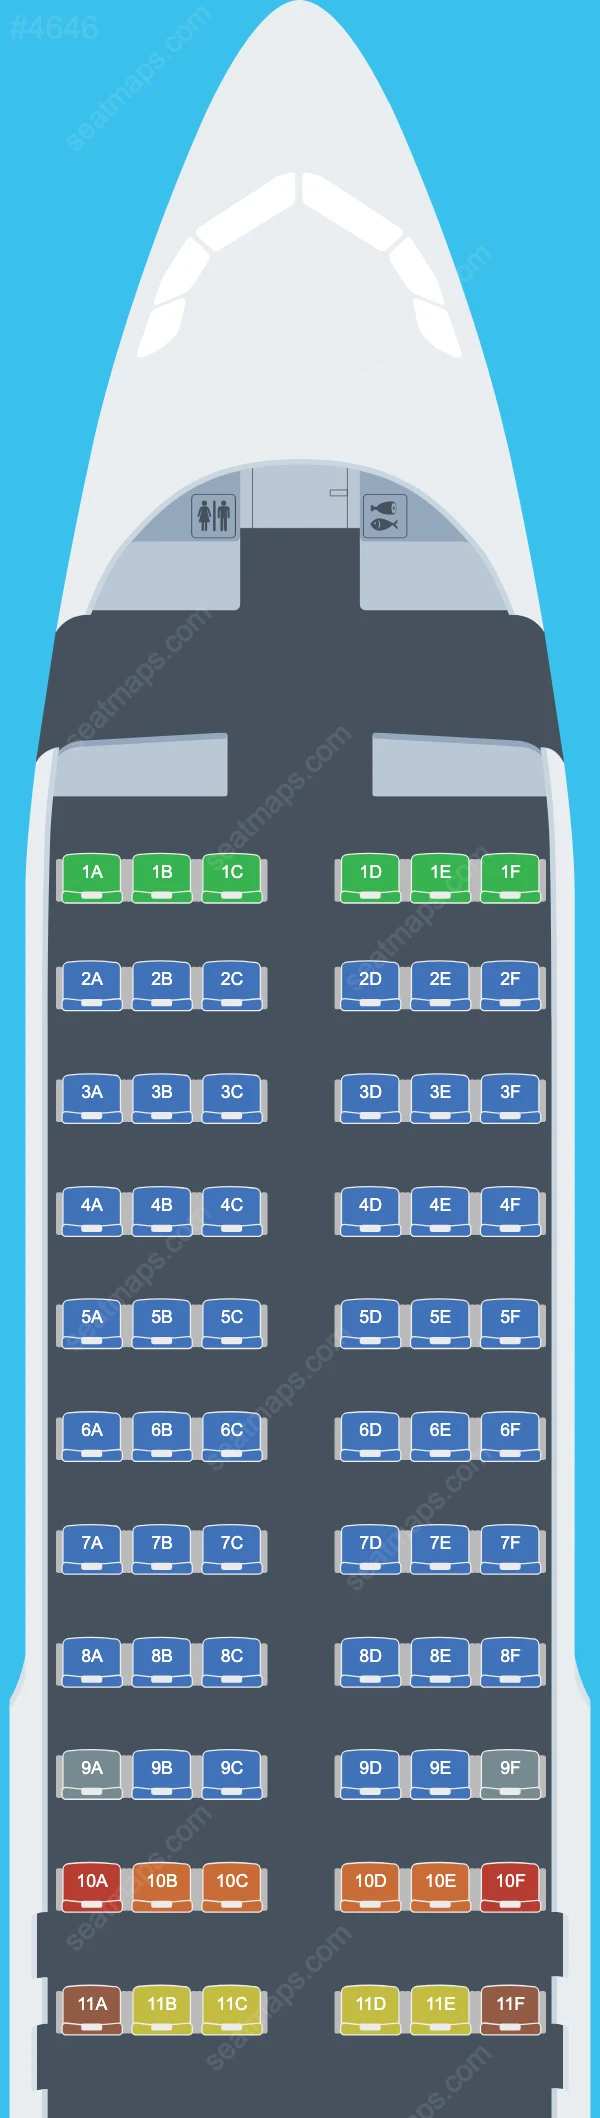 Meraj Air Airbus A320 Seat Maps A320-200 V.2